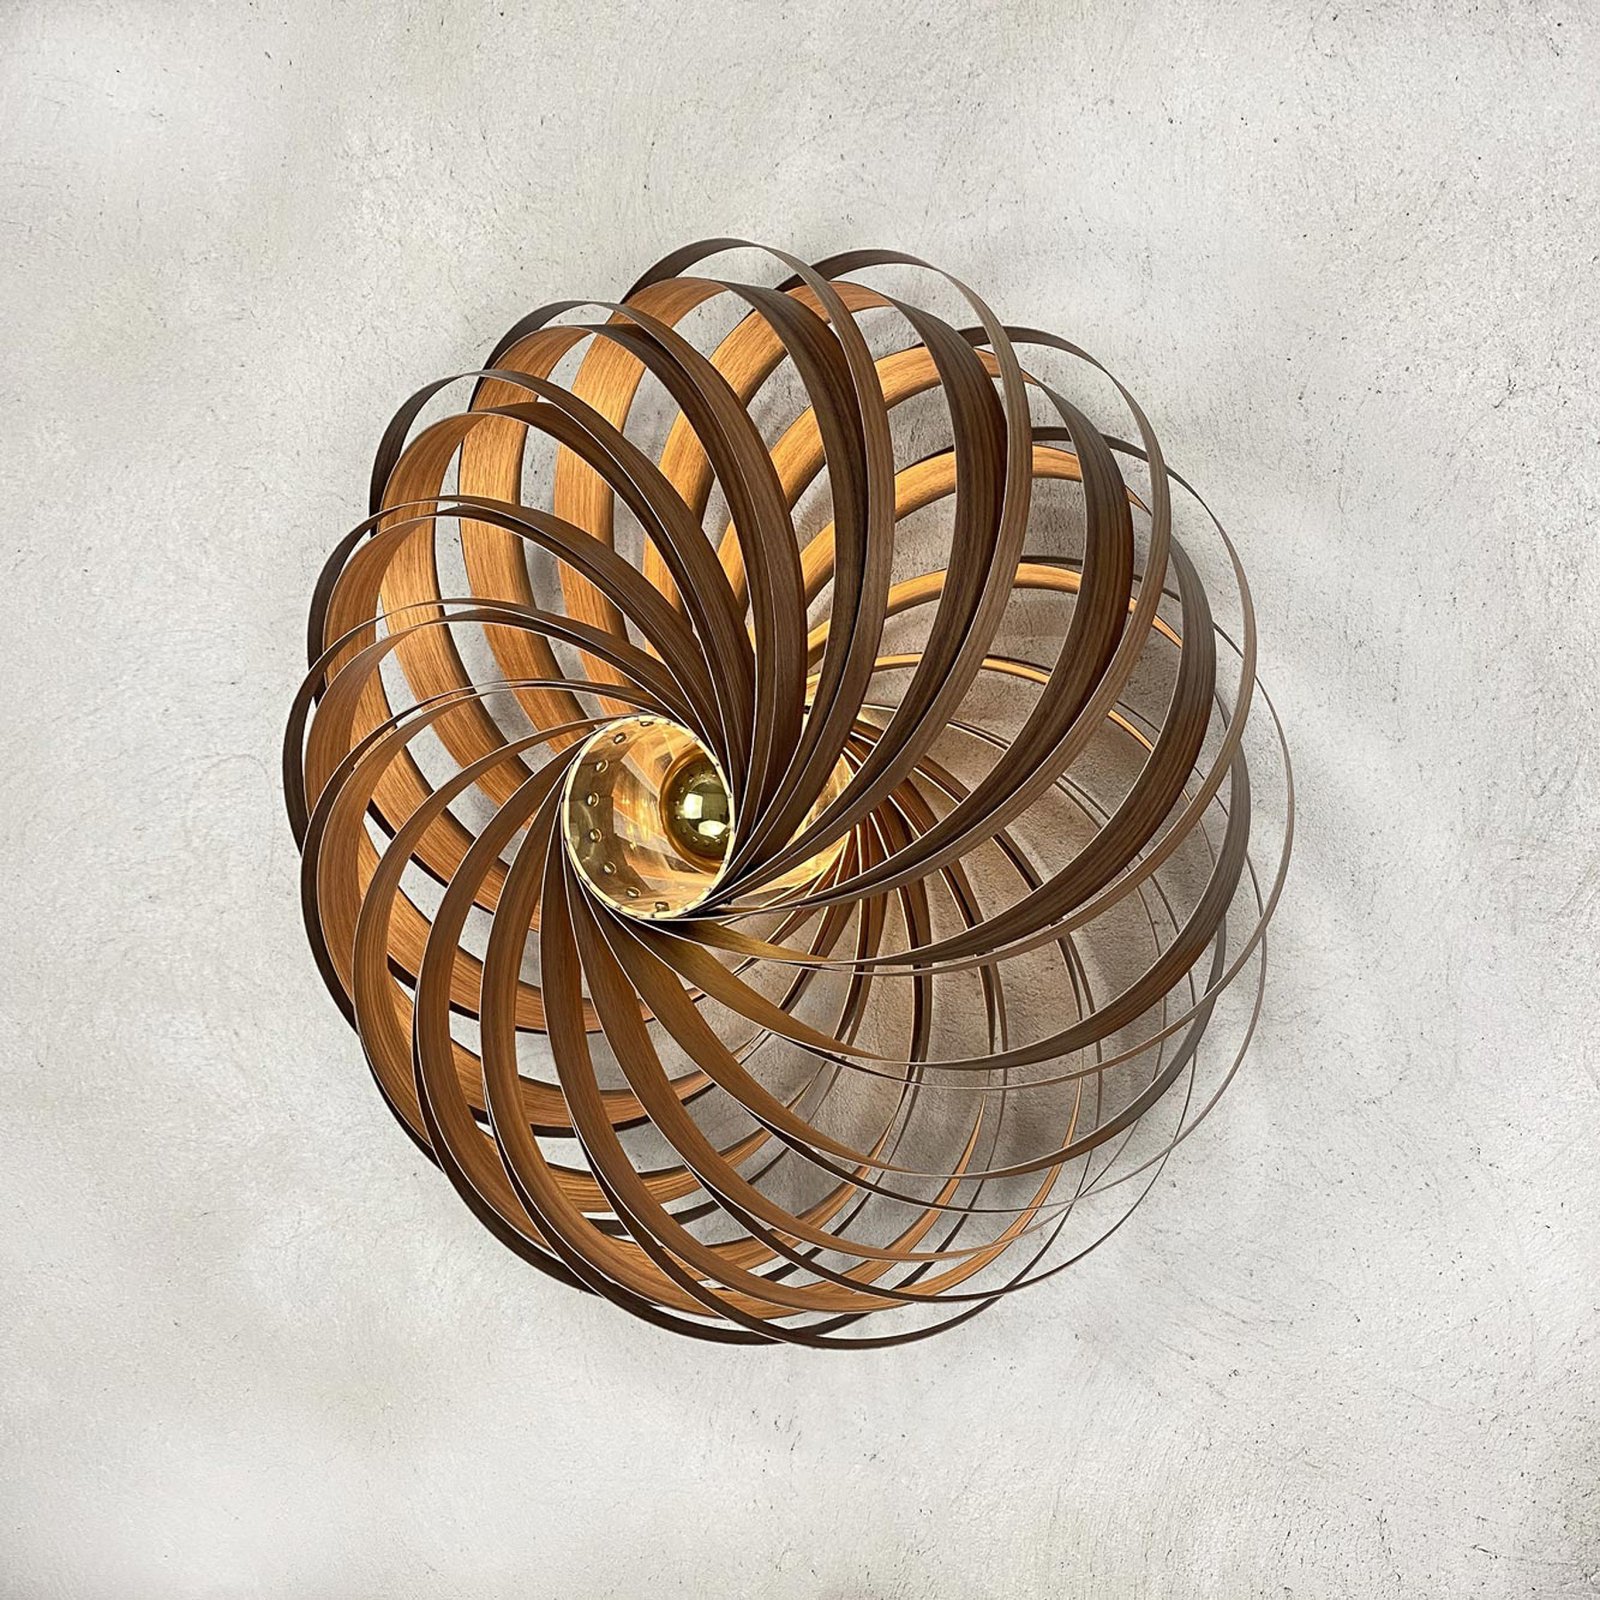 Gofurnit Veneria nástěnné světlo, ořech, Ø 70 cm